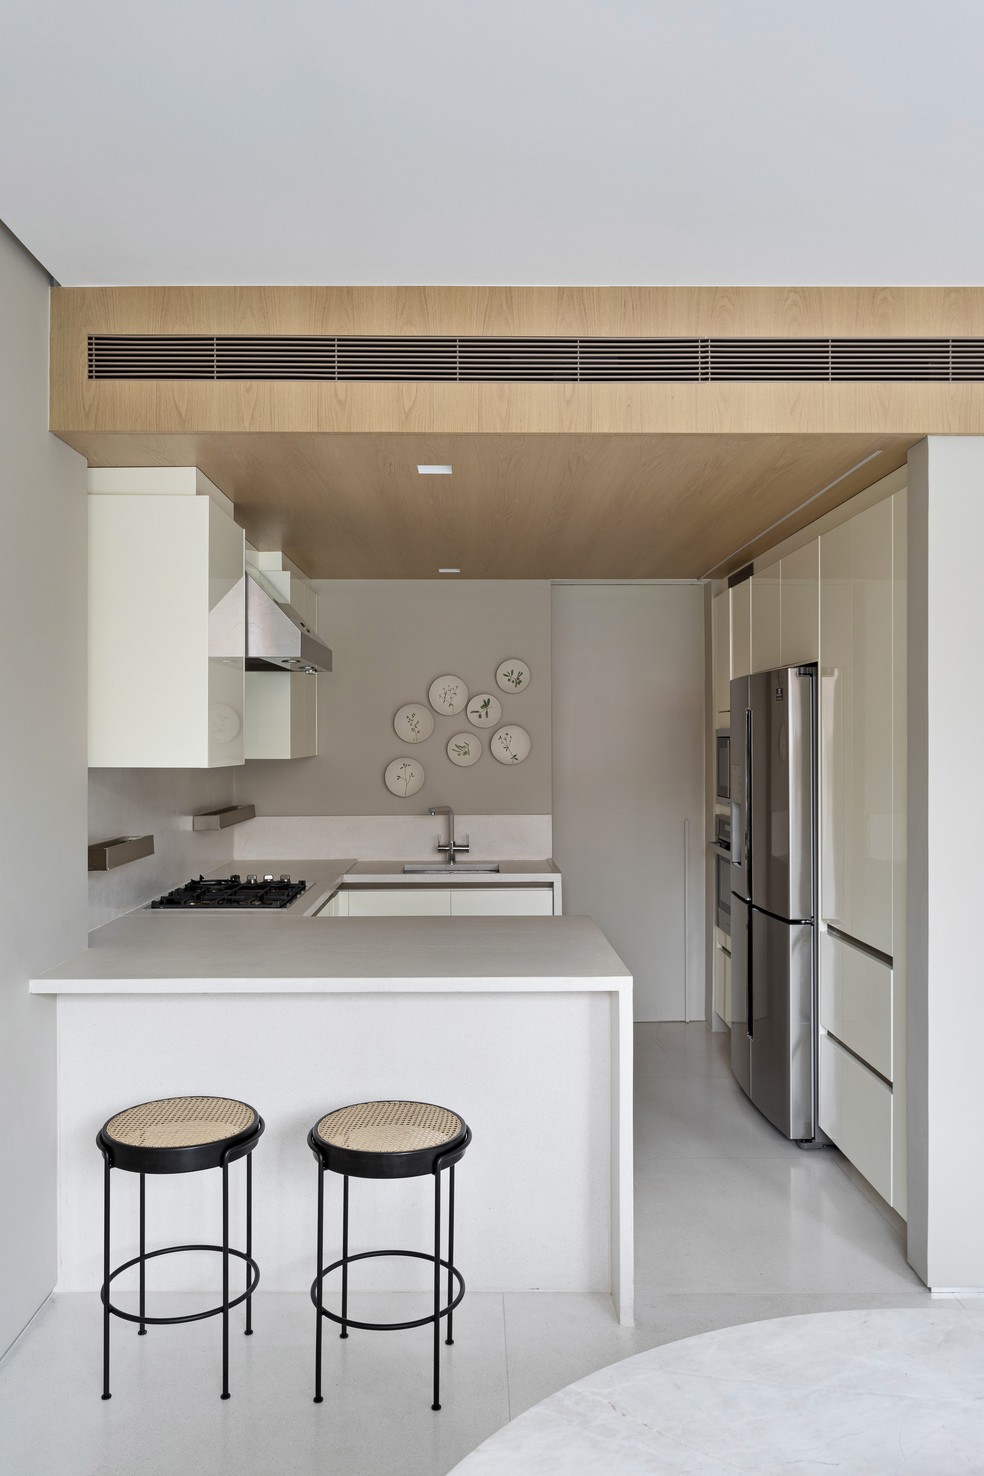 Cozinha tem estilo minimalista — Foto: Denilson Machado/MCA Estúdio